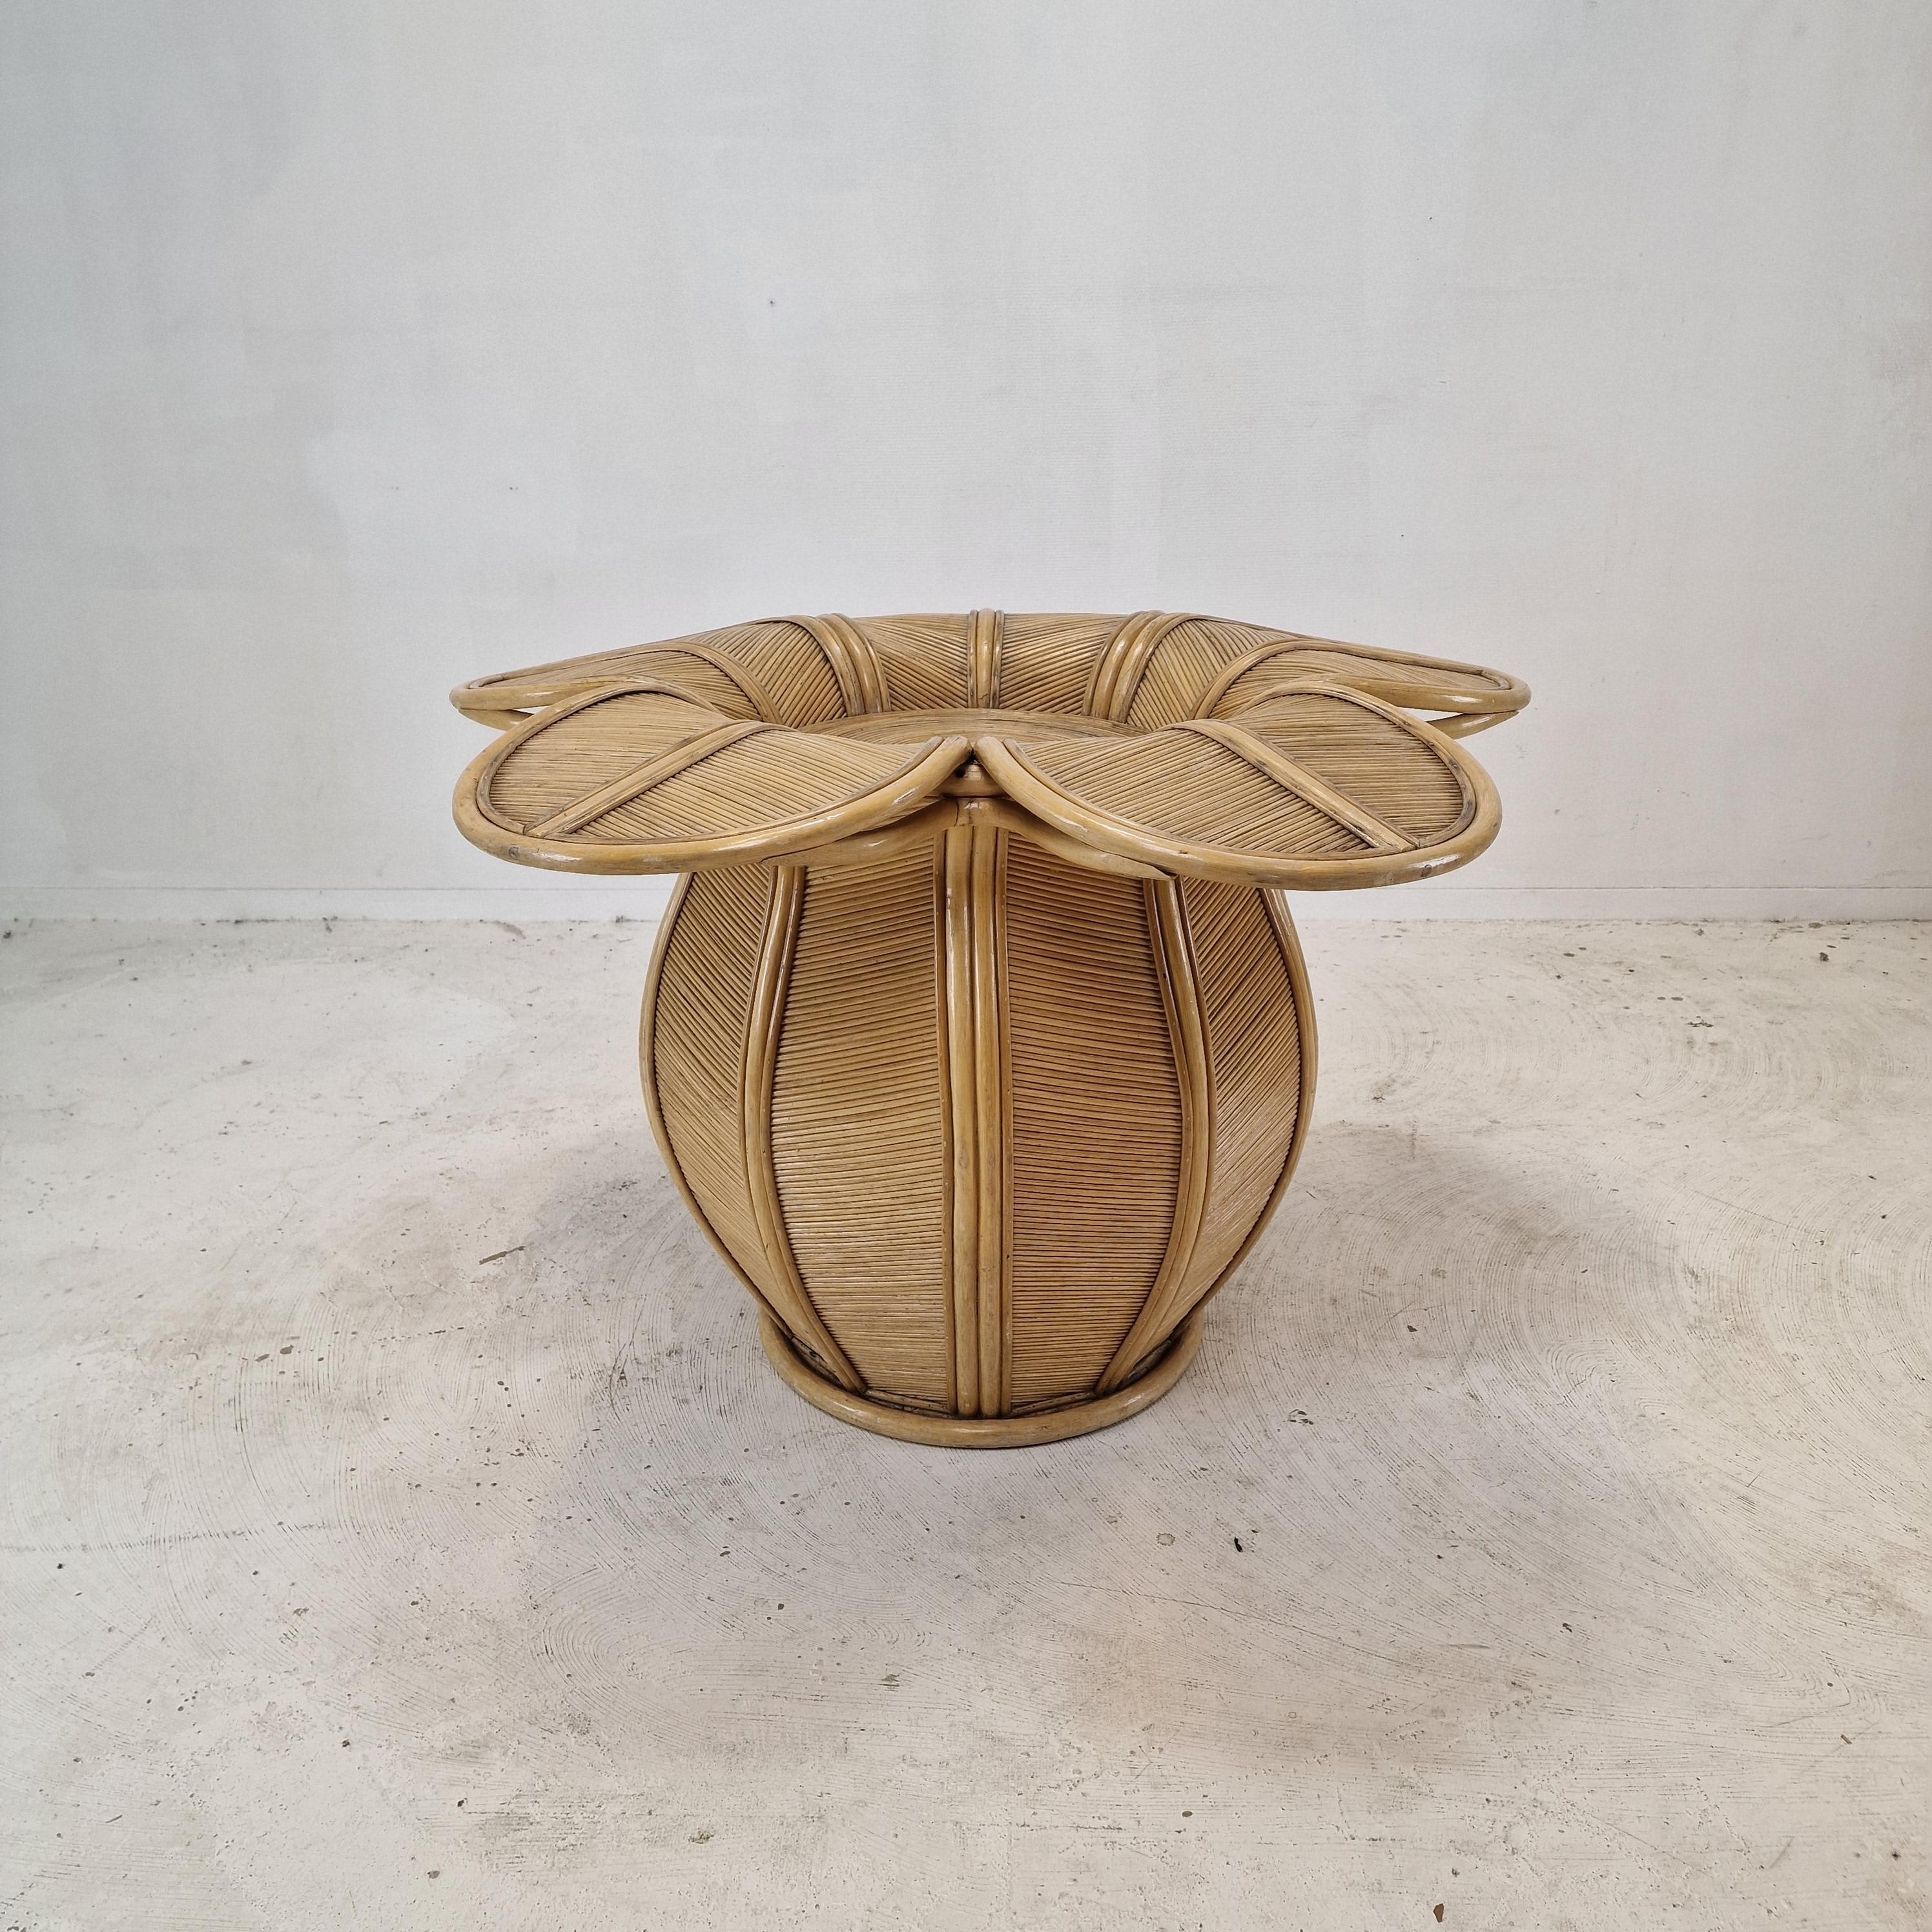 Atemberaubender Esstischsockel, der in den frühen 80er Jahren in Frankreich hergestellt wurde. 
Dieser schöne und sehr seltene Tisch ist aus Bambus und Rattan gefertigt.

Sehr schön geformter und solider Sockel, von oben sieht er aus wie eine